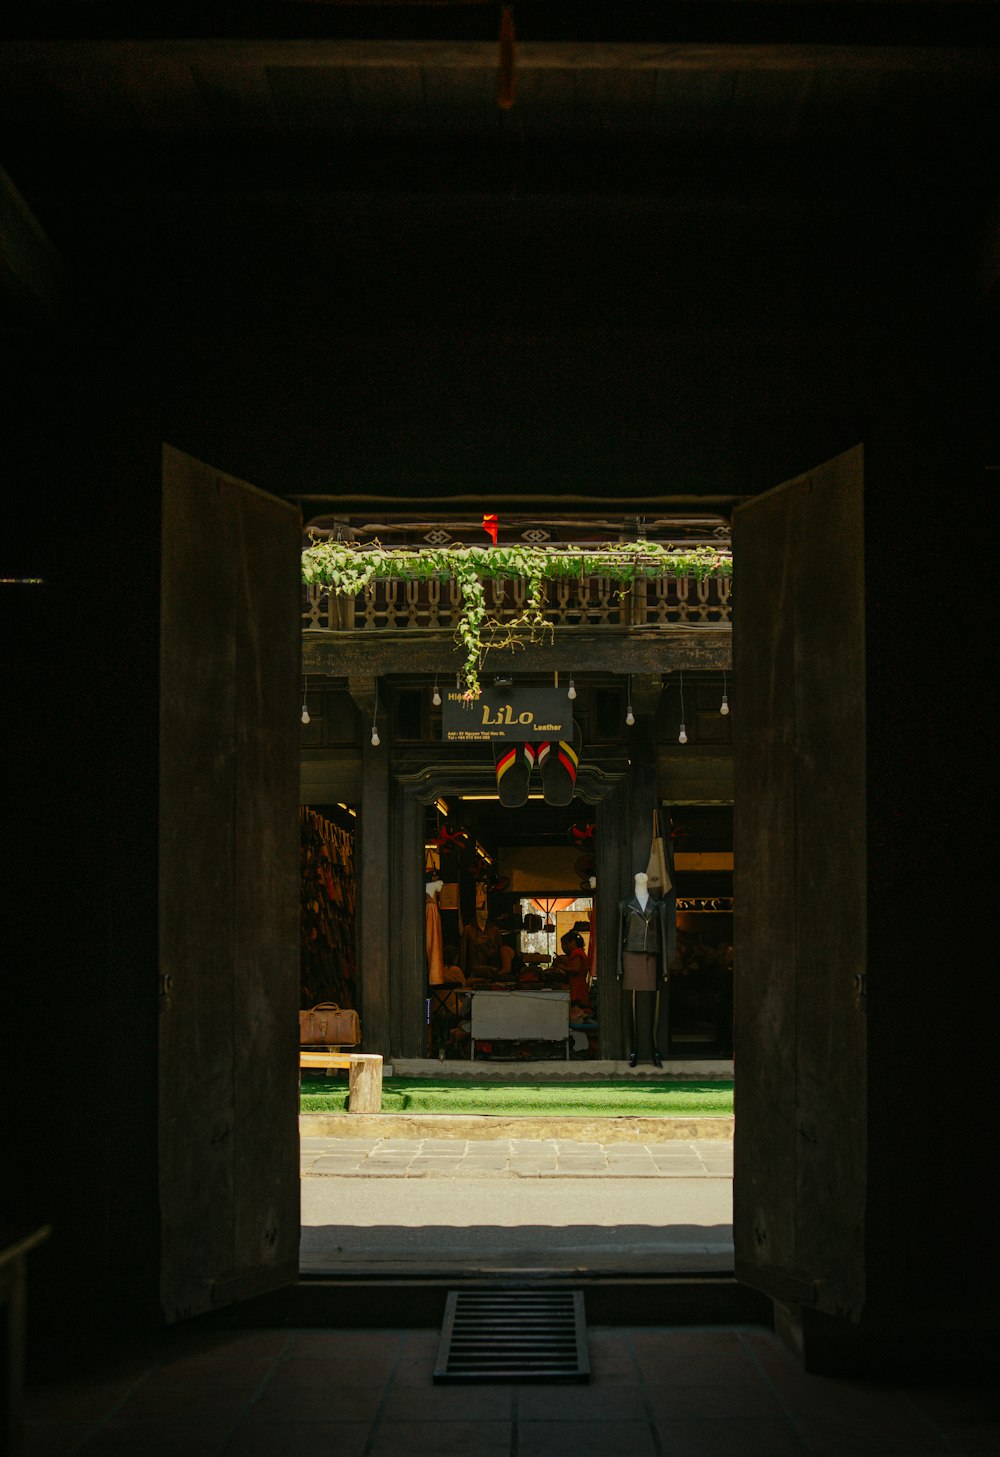 an open doorway leading into a dark room